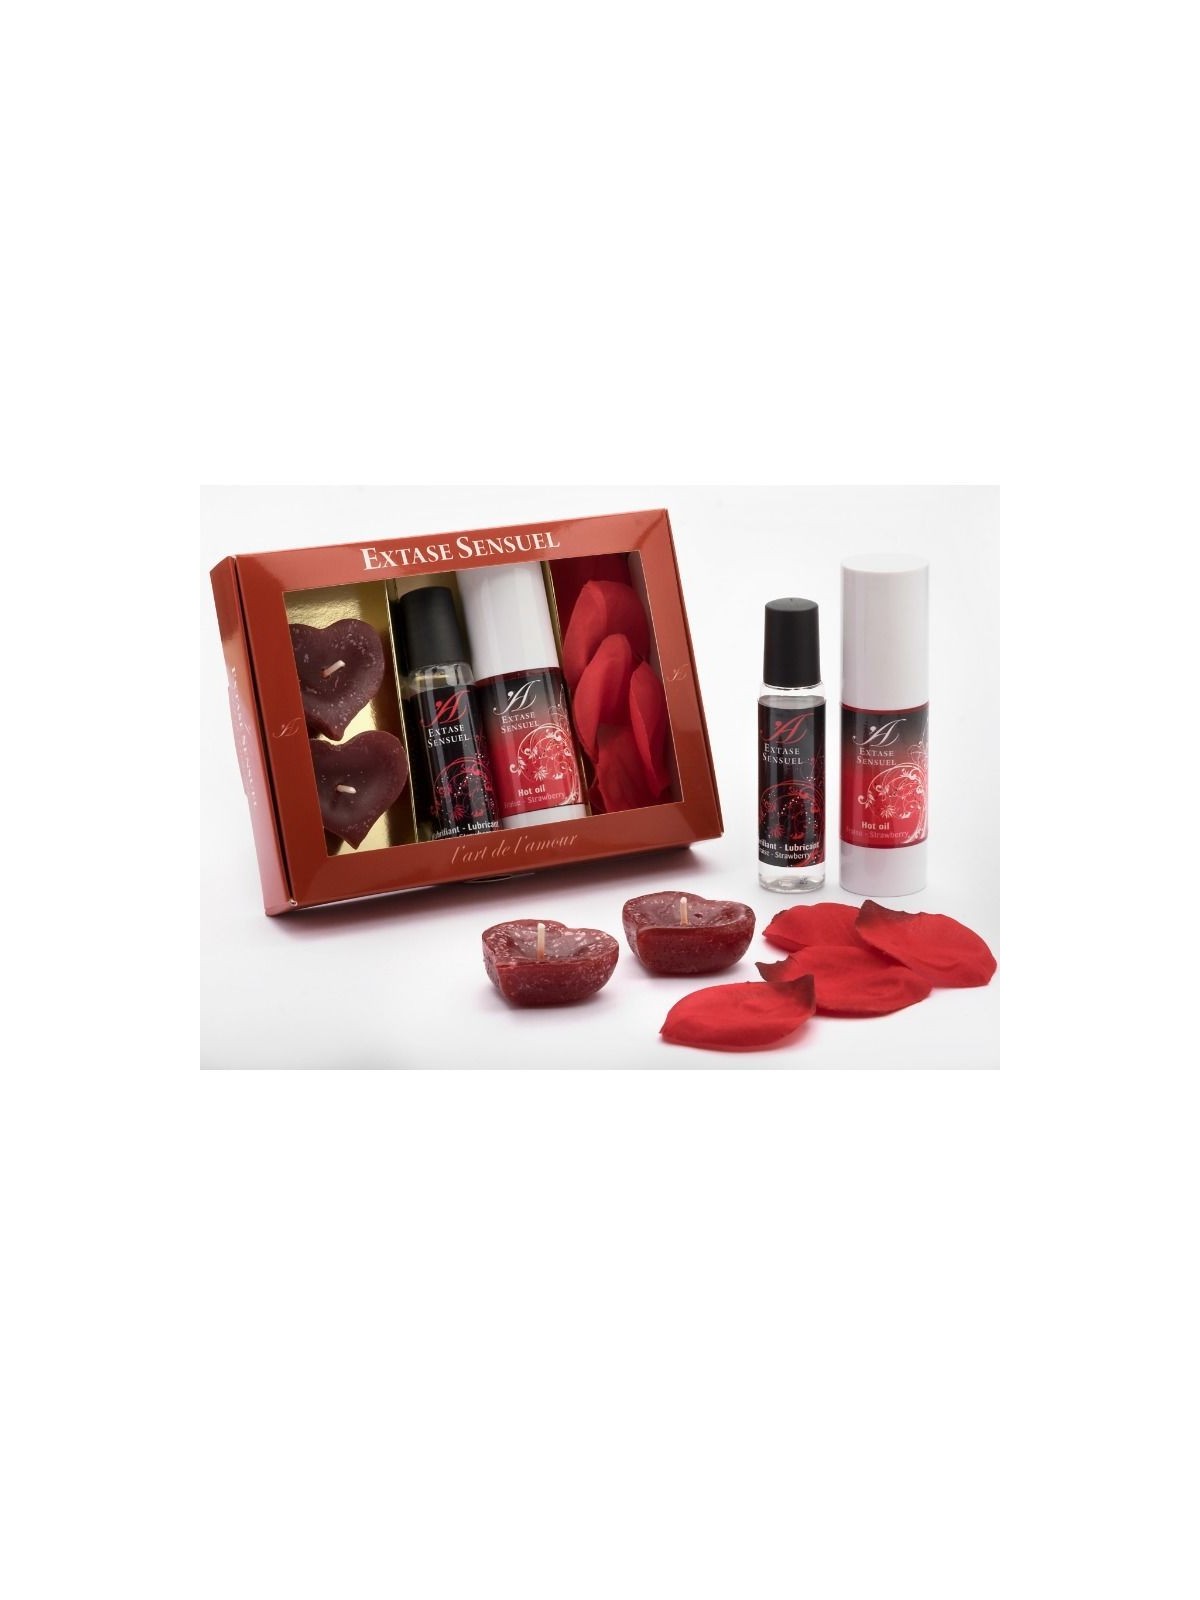 Extase Sensuel Cofre Tentación Roja - Comprar Kit masaje erótico Extase Sensuel - Kits de masaje erótico (1)